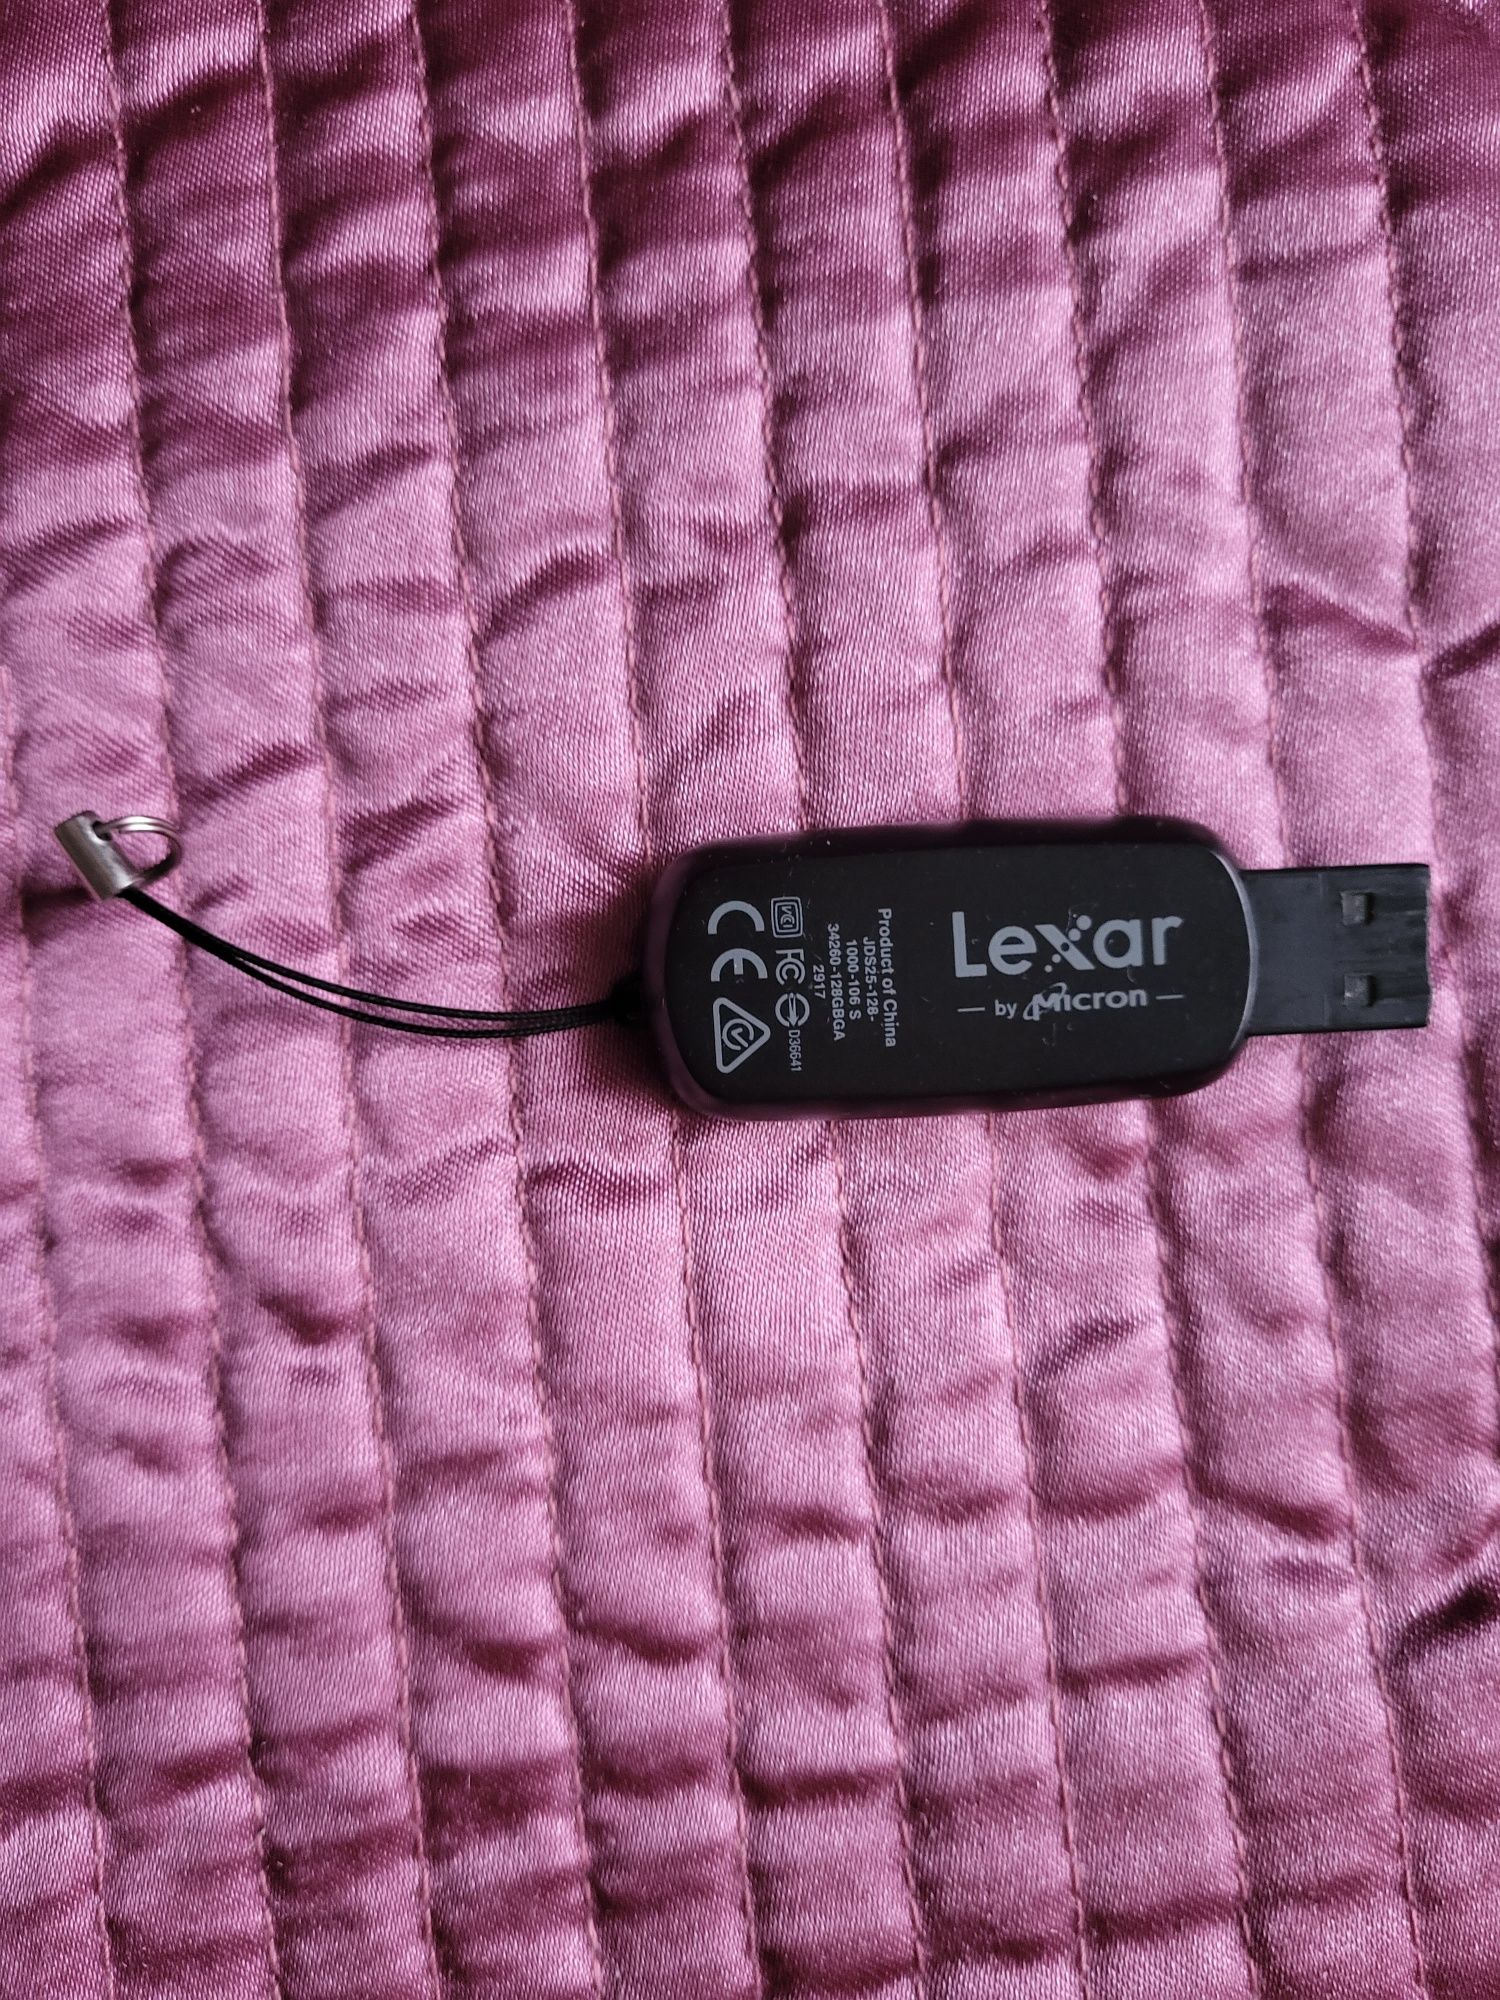 Stick Lexar 128 GB usb 3.0.